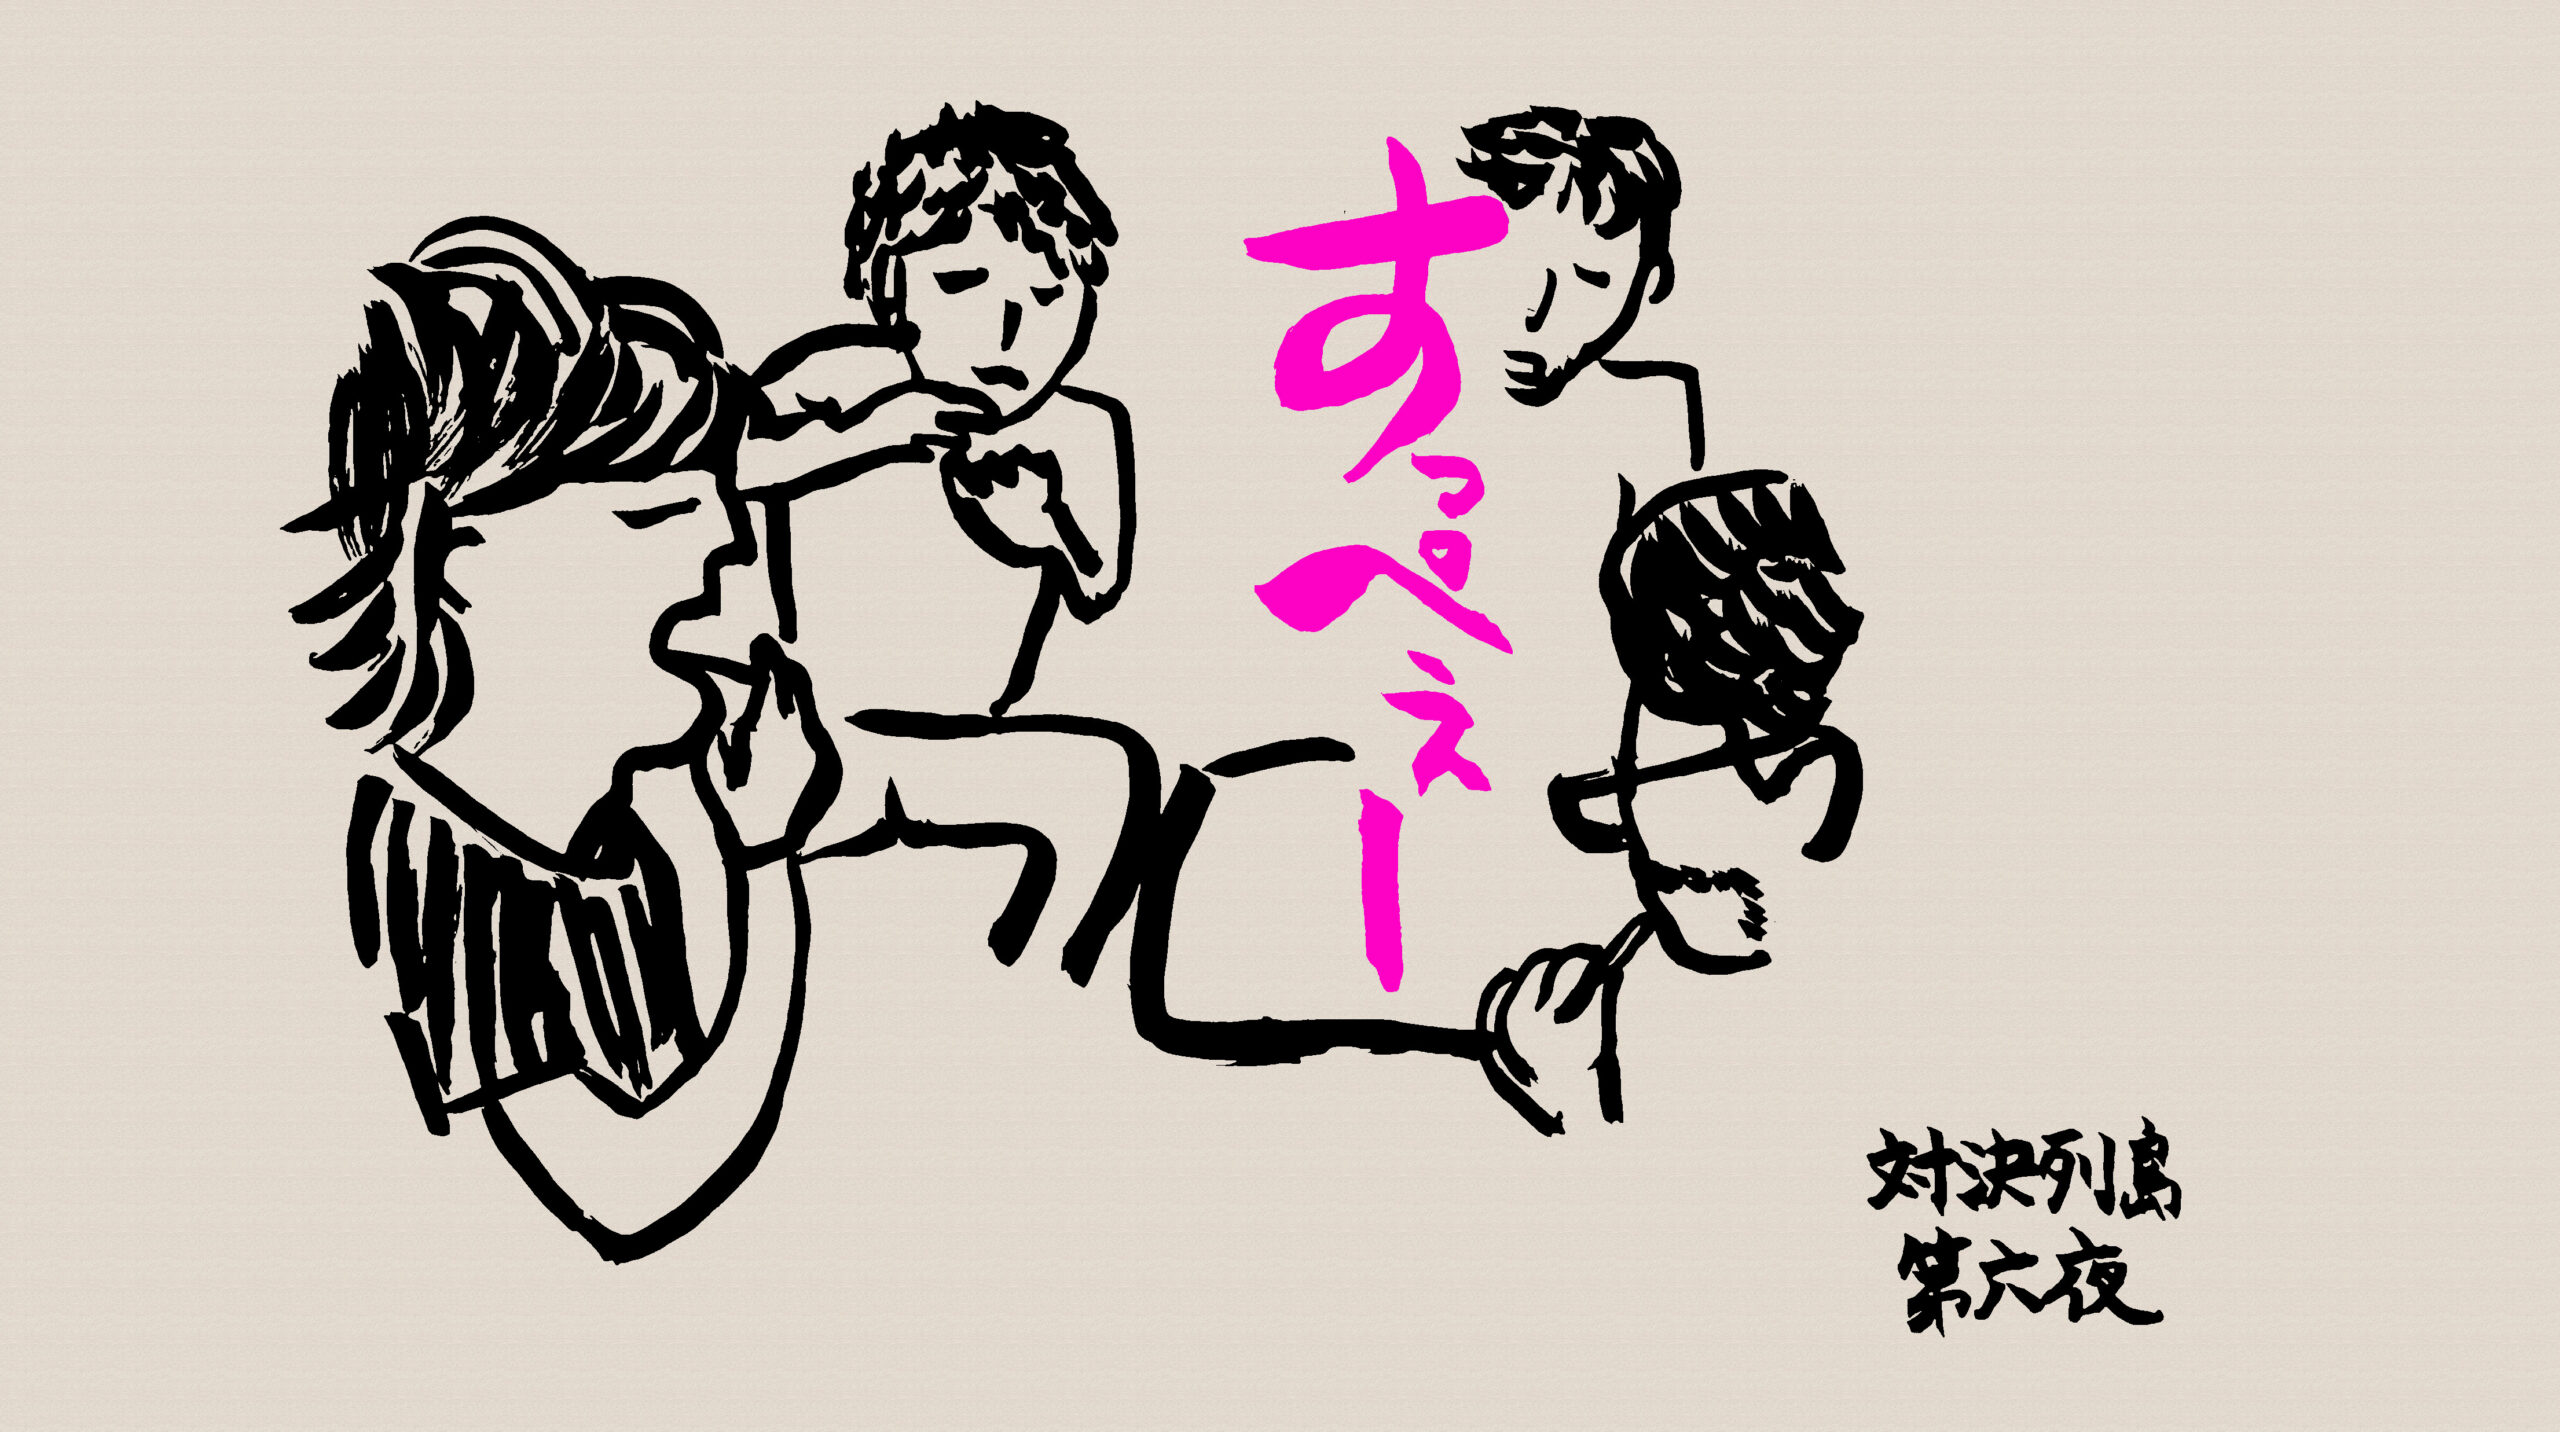 藤村忠寿が梅ジャムを食べて「すっぺー」と言っているところの絵